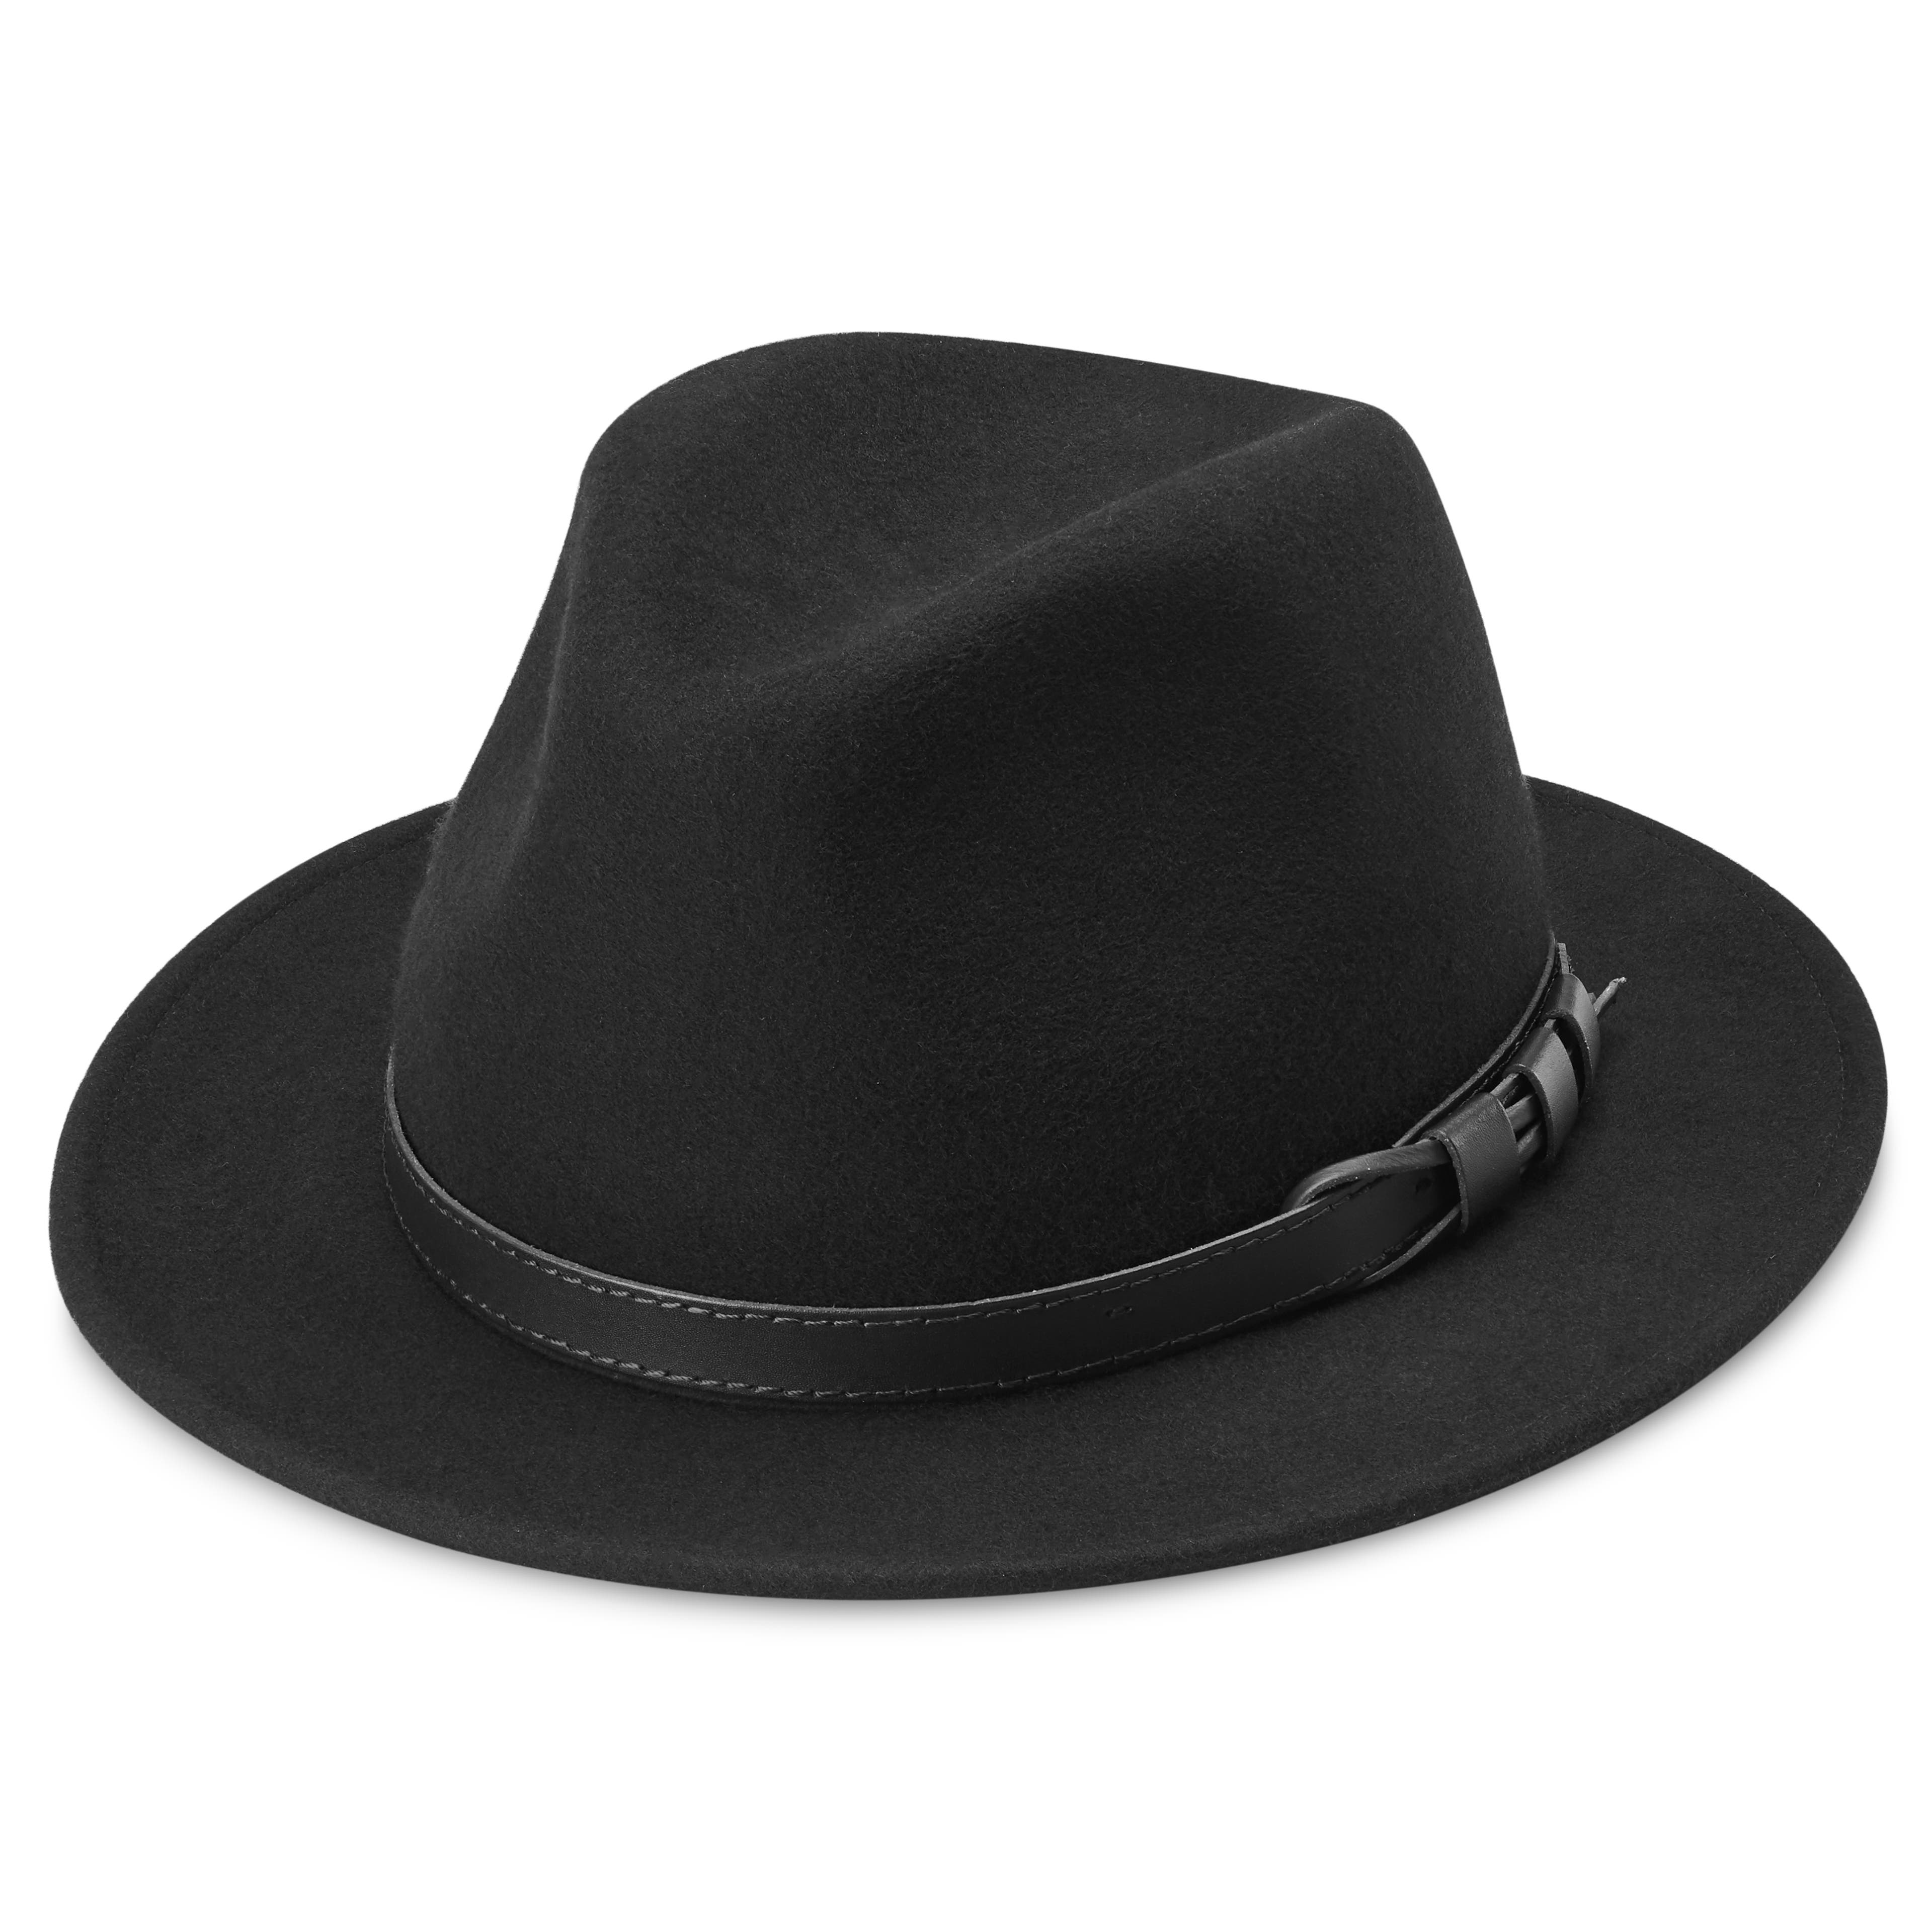 Flavio Černý vlněný klobouk Moda Fedora s prochou krempou